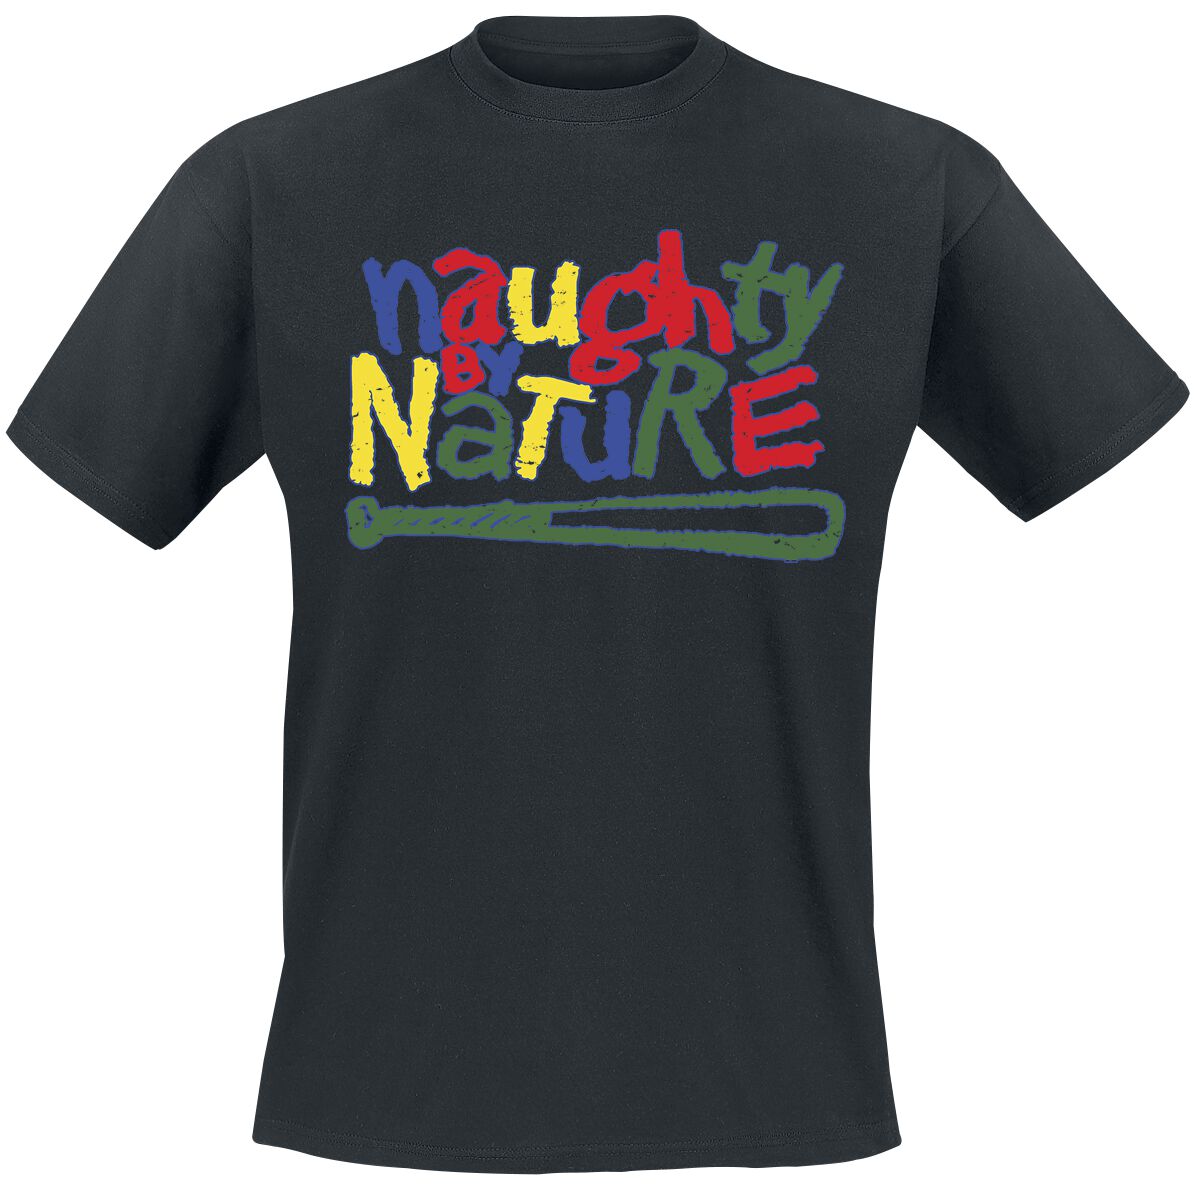 Naughty by Nature T-Shirt - Classic Colourful Logo - S bis 3XL - für Männer - Größe M - schwarz  - Lizenziertes Merchandise!